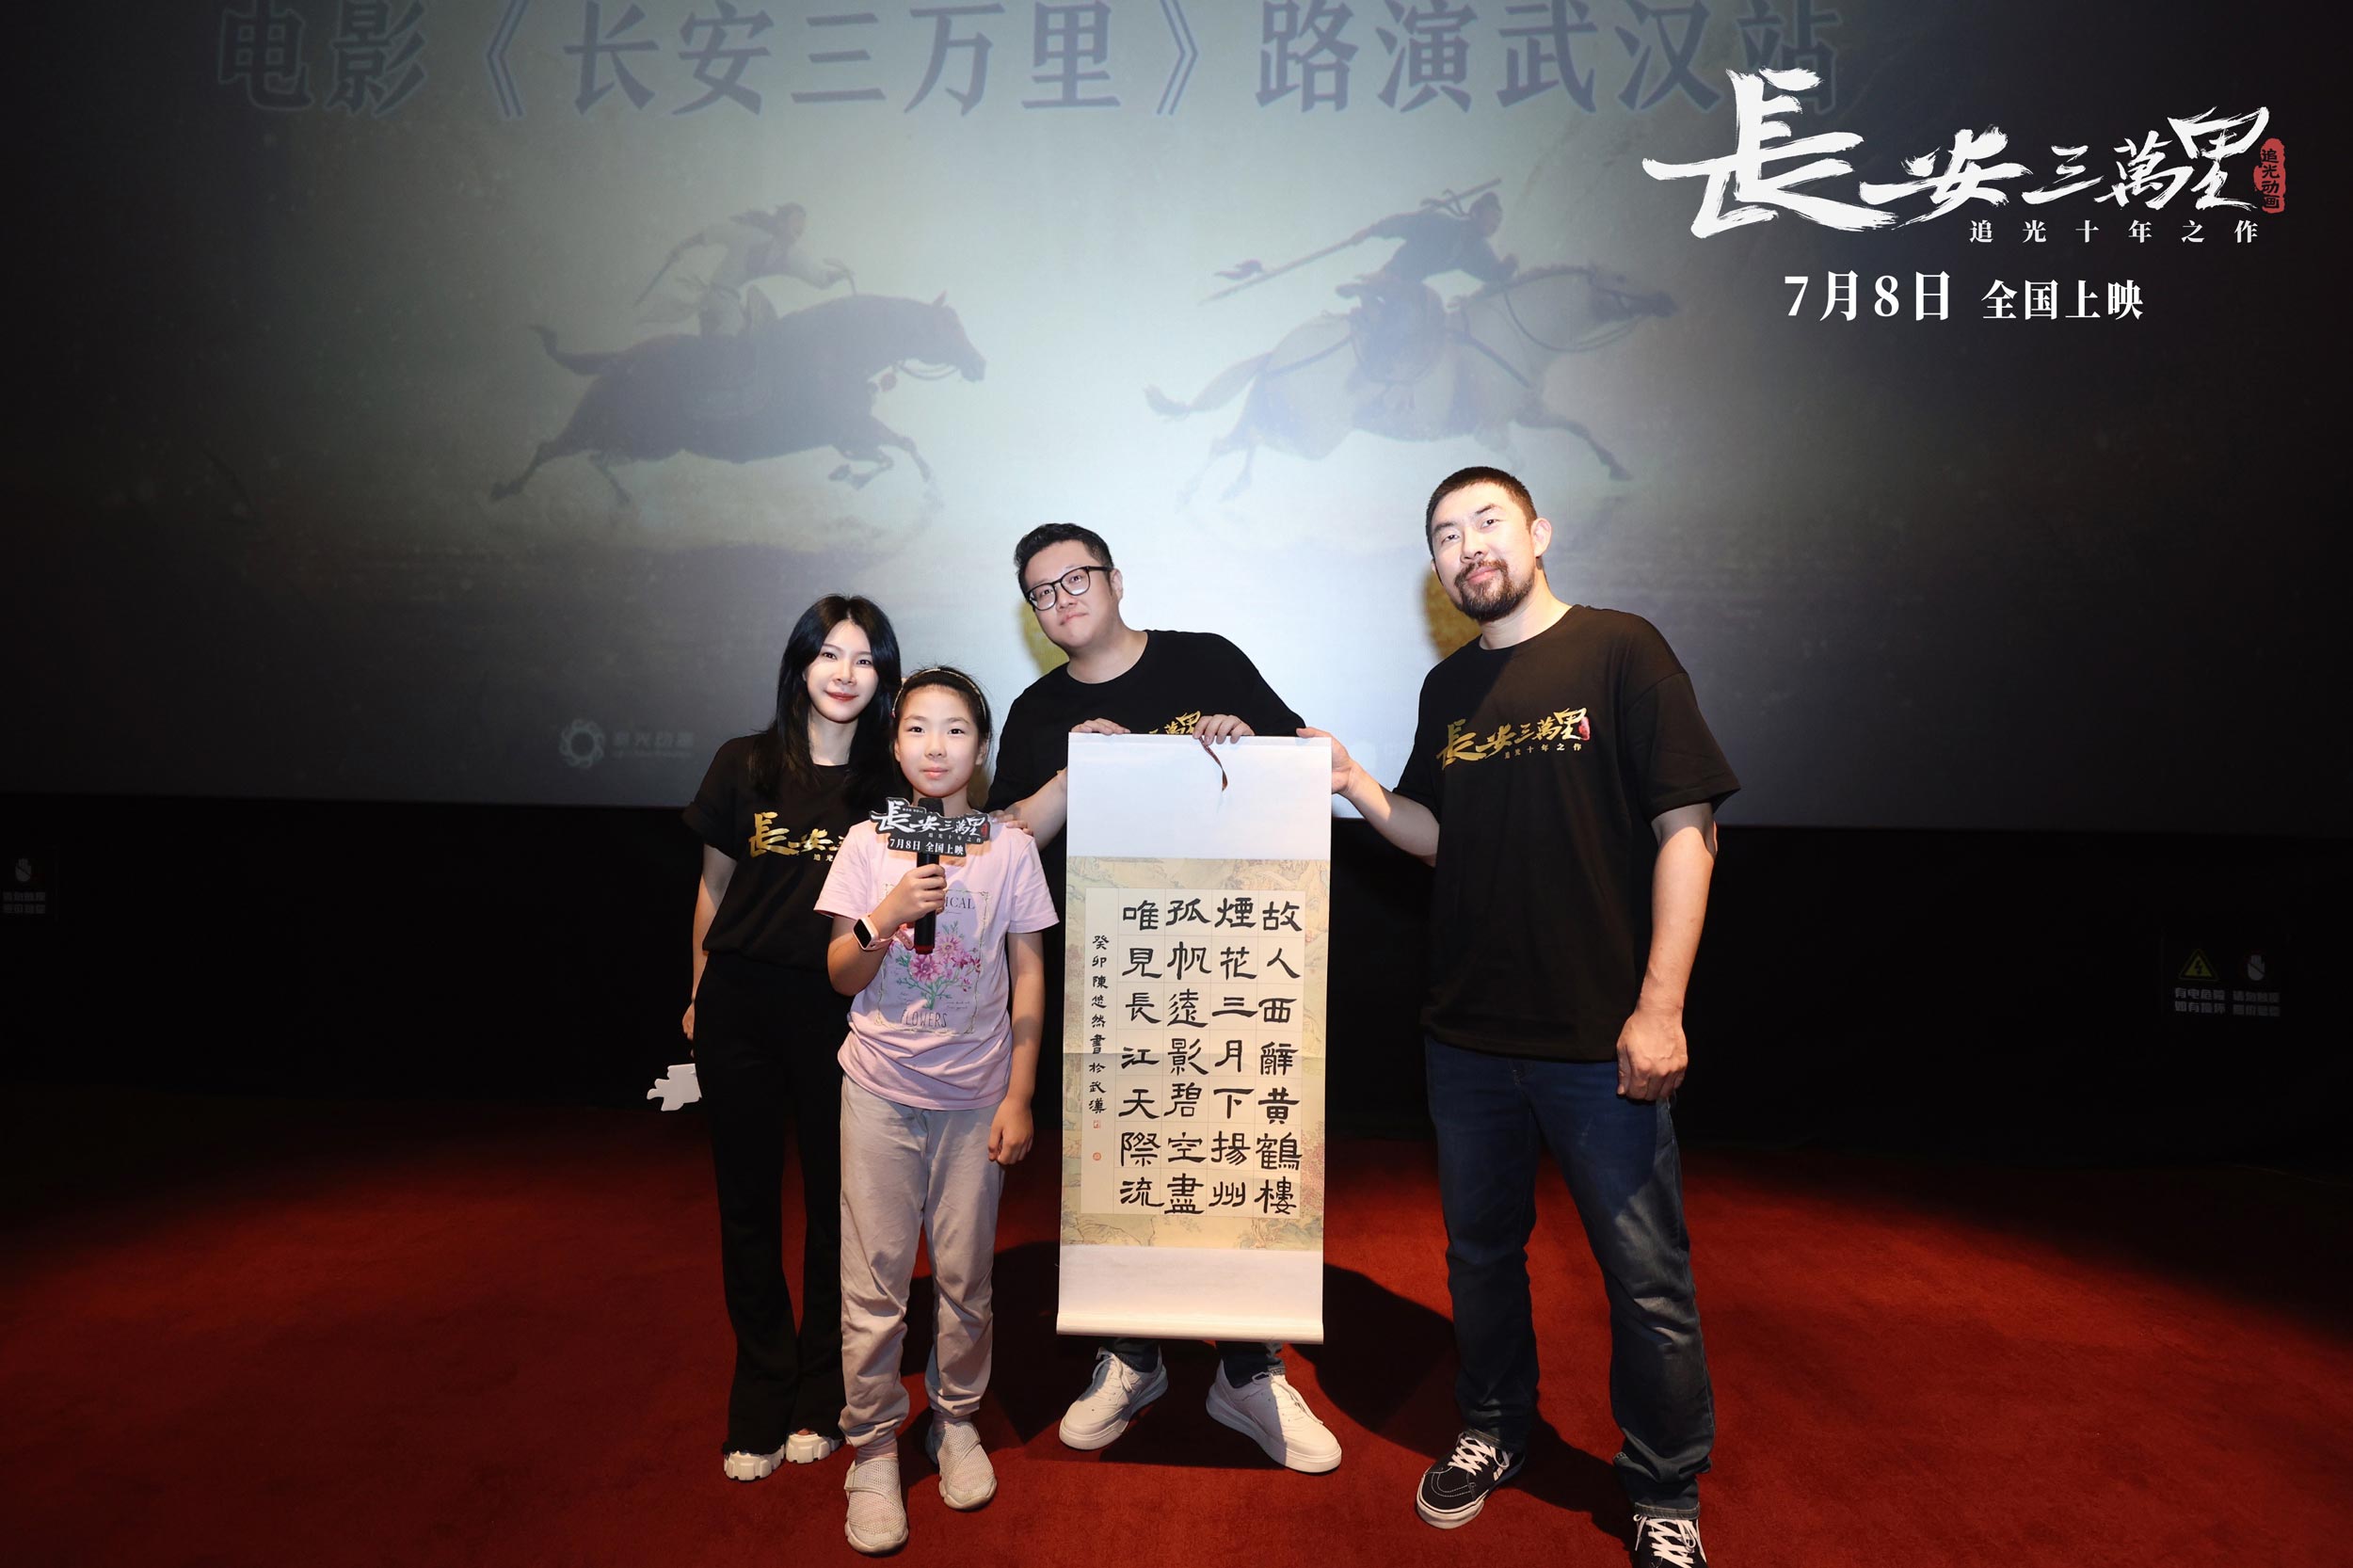 电影《长安三万里》武汉路演 民间收藏家致谢“留住心中的黄鹤楼”